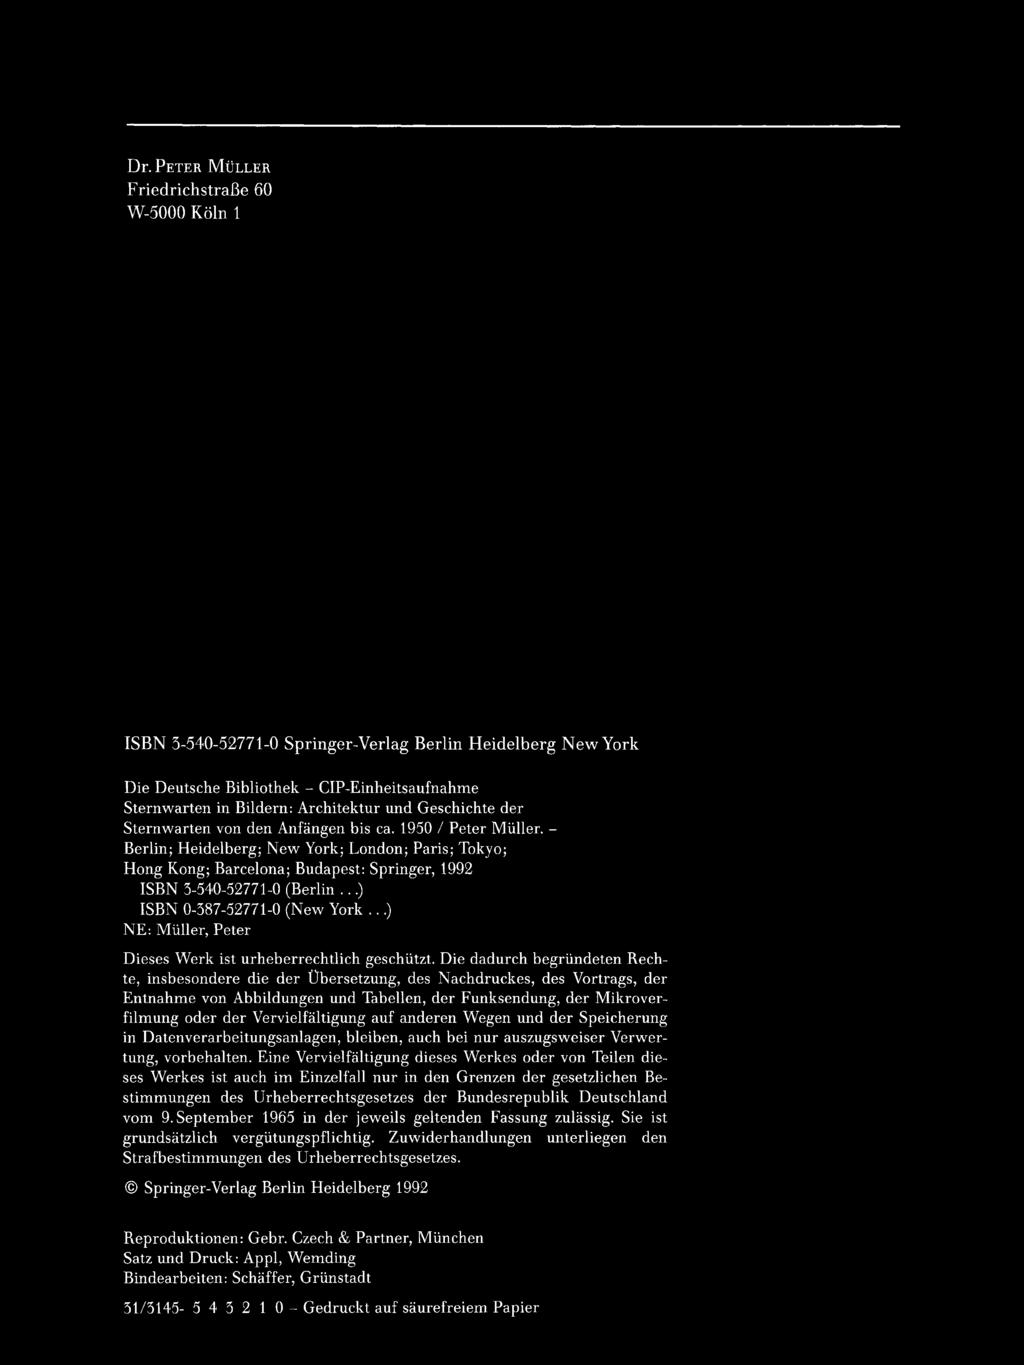 Dr. PETER MULLER FriedrichstraBe 60 W-5000 Kaln 1 ISBN 3-540-52771-0 Springer-Verlag Berlin Heidelberg New York Die Deutsche Bibliothek - CIP-Einheitsaufnahme Sternwarten in Bildern: Architektur und